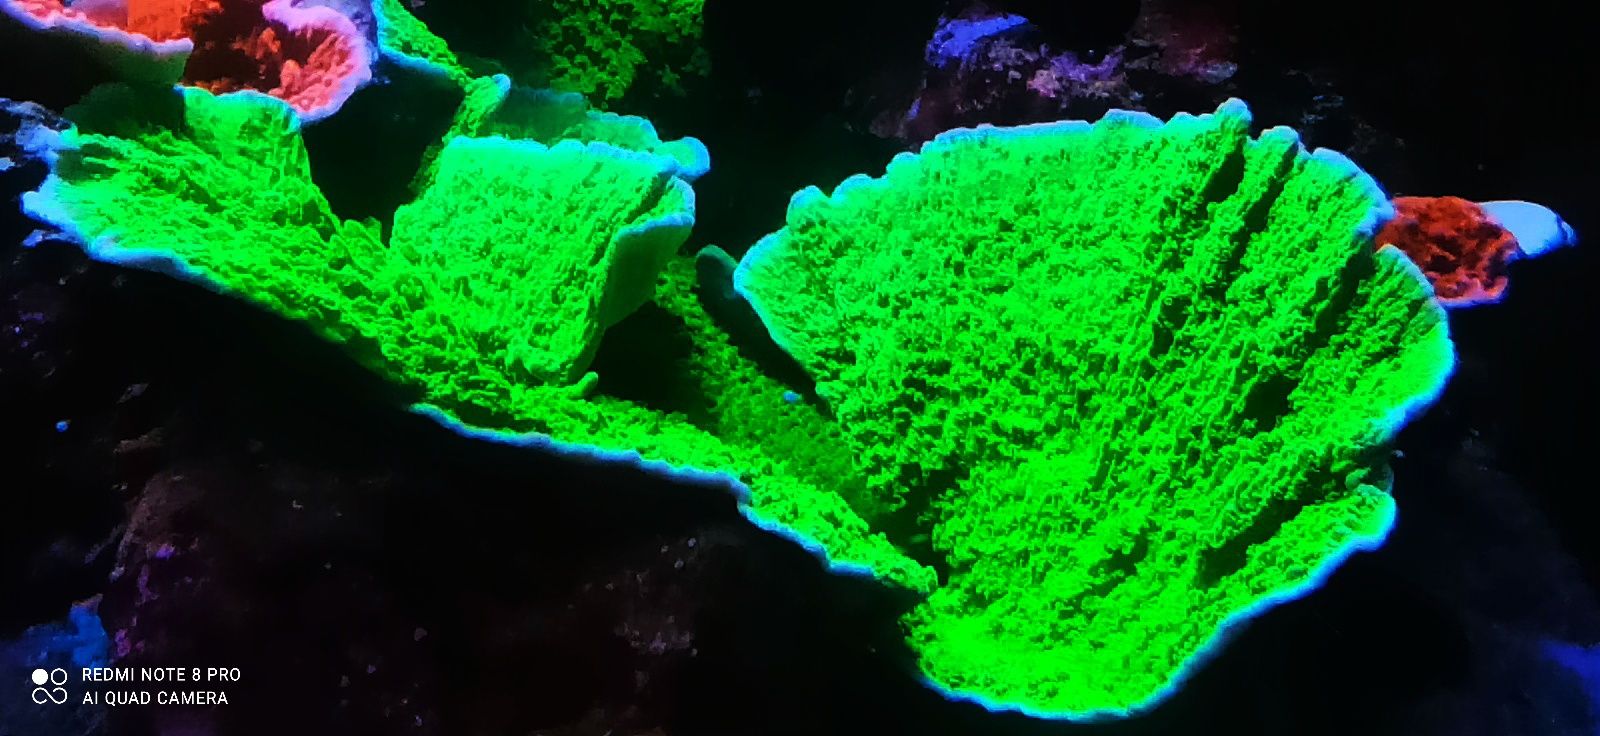 Koralowiec montipora zielona